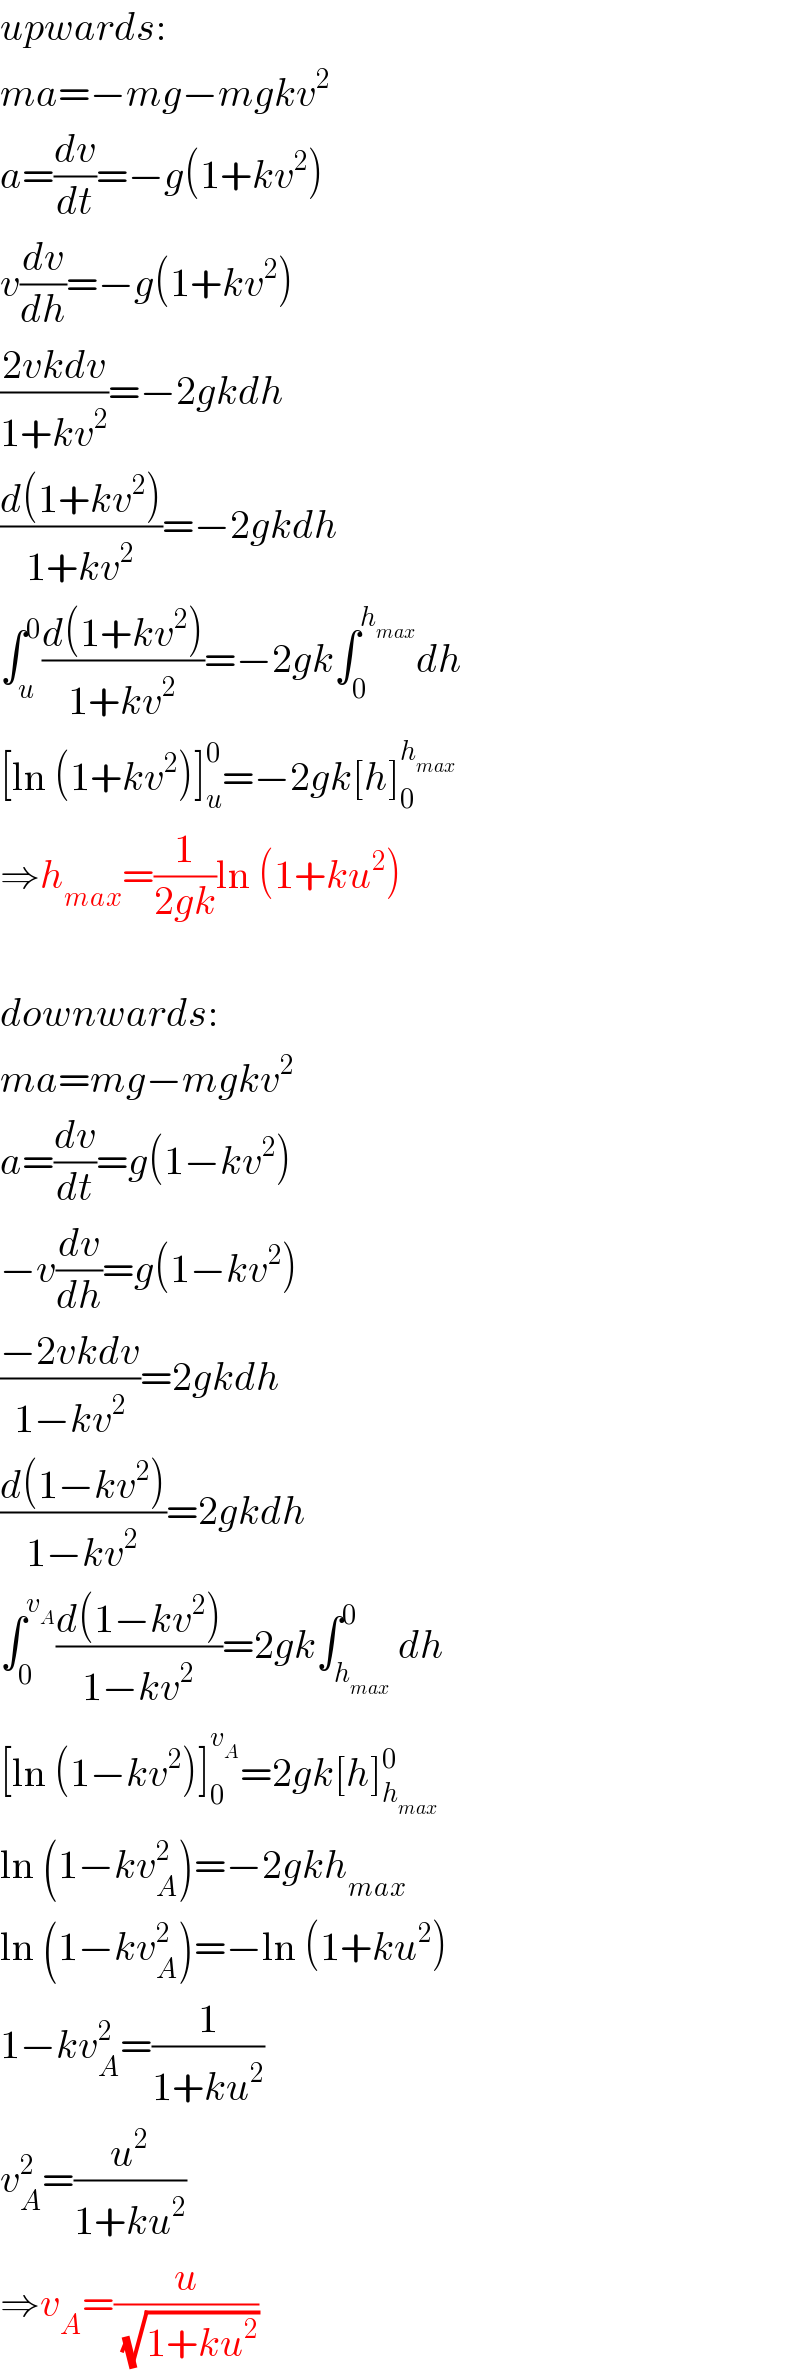 upwards:  ma=−mg−mgkv^2   a=(dv/dt)=−g(1+kv^2 )  v(dv/dh)=−g(1+kv^2 )  ((2vkdv)/(1+kv^2 ))=−2gkdh  ((d(1+kv^2 ))/(1+kv^2 ))=−2gkdh  ∫_u ^0 ((d(1+kv^2 ))/(1+kv^2 ))=−2gk∫_0 ^h_(max)  dh  [ln (1+kv^2 )]_u ^0 =−2gk[h]_0 ^h_(max)    ⇒h_(max) =(1/(2gk))ln (1+ku^2 )    downwards:  ma=mg−mgkv^2   a=(dv/dt)=g(1−kv^2 )  −v(dv/dh)=g(1−kv^2 )  ((−2vkdv)/(1−kv^2 ))=2gkdh  ((d(1−kv^2 ))/(1−kv^2 ))=2gkdh  ∫_0 ^v_A  ((d(1−kv^2 ))/(1−kv^2 ))=2gk∫_h_(max)  ^0 dh  [ln (1−kv^2 )]_0 ^v_A  =2gk[h]_h_(max)  ^0   ln (1−kv_A ^2 )=−2gkh_(max)   ln (1−kv_A ^2 )=−ln (1+ku^2 )  1−kv_A ^2 =(1/(1+ku^2 ))  v_A ^2 =(u^2 /(1+ku^2 ))  ⇒v_A =(u/(√(1+ku^2 )))  